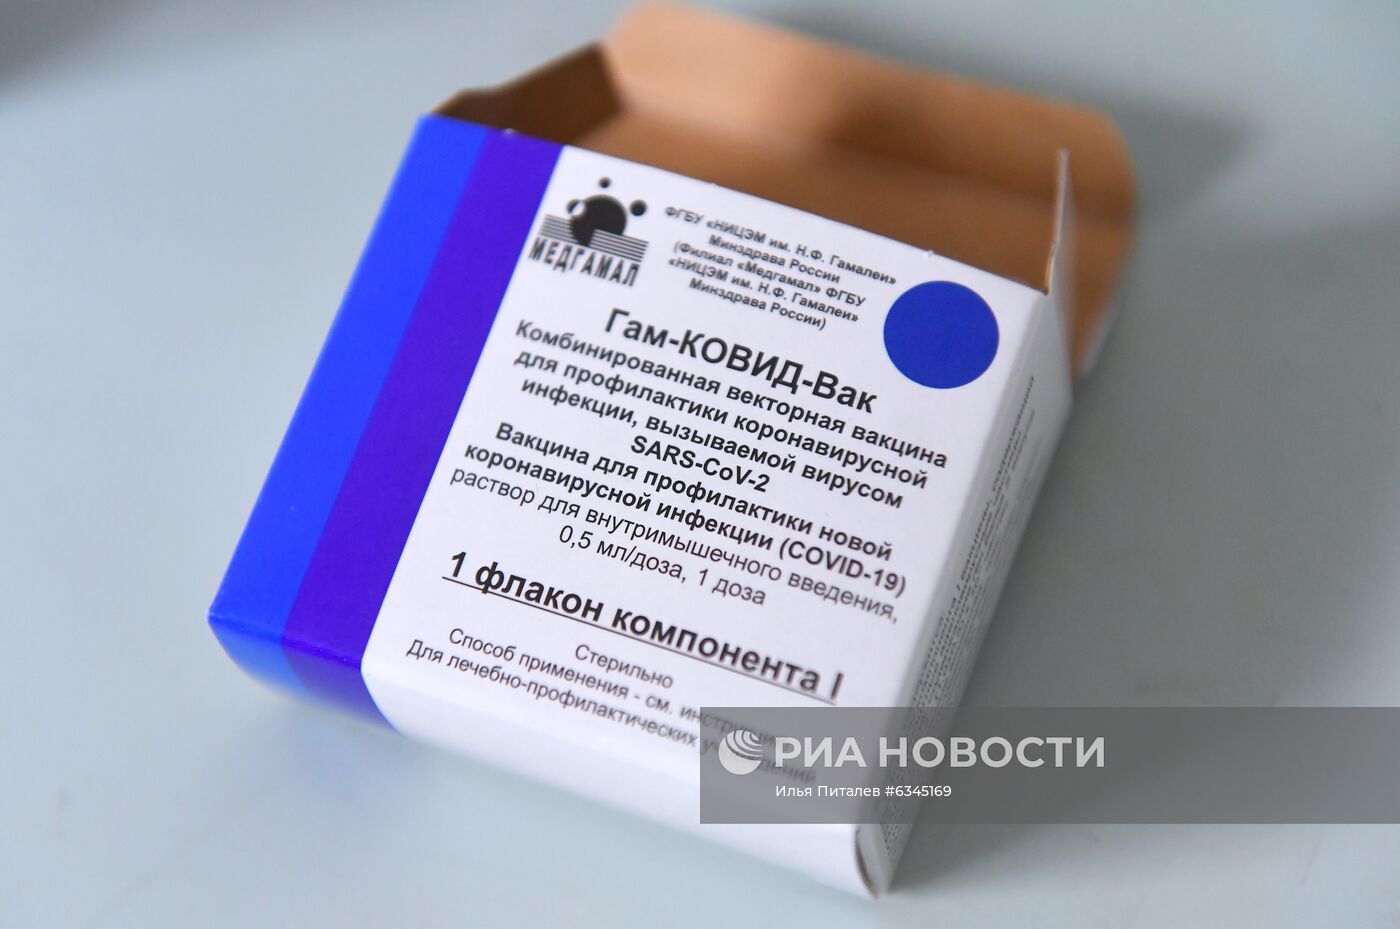 Вакцинация медработников от COVID-19 в Москве